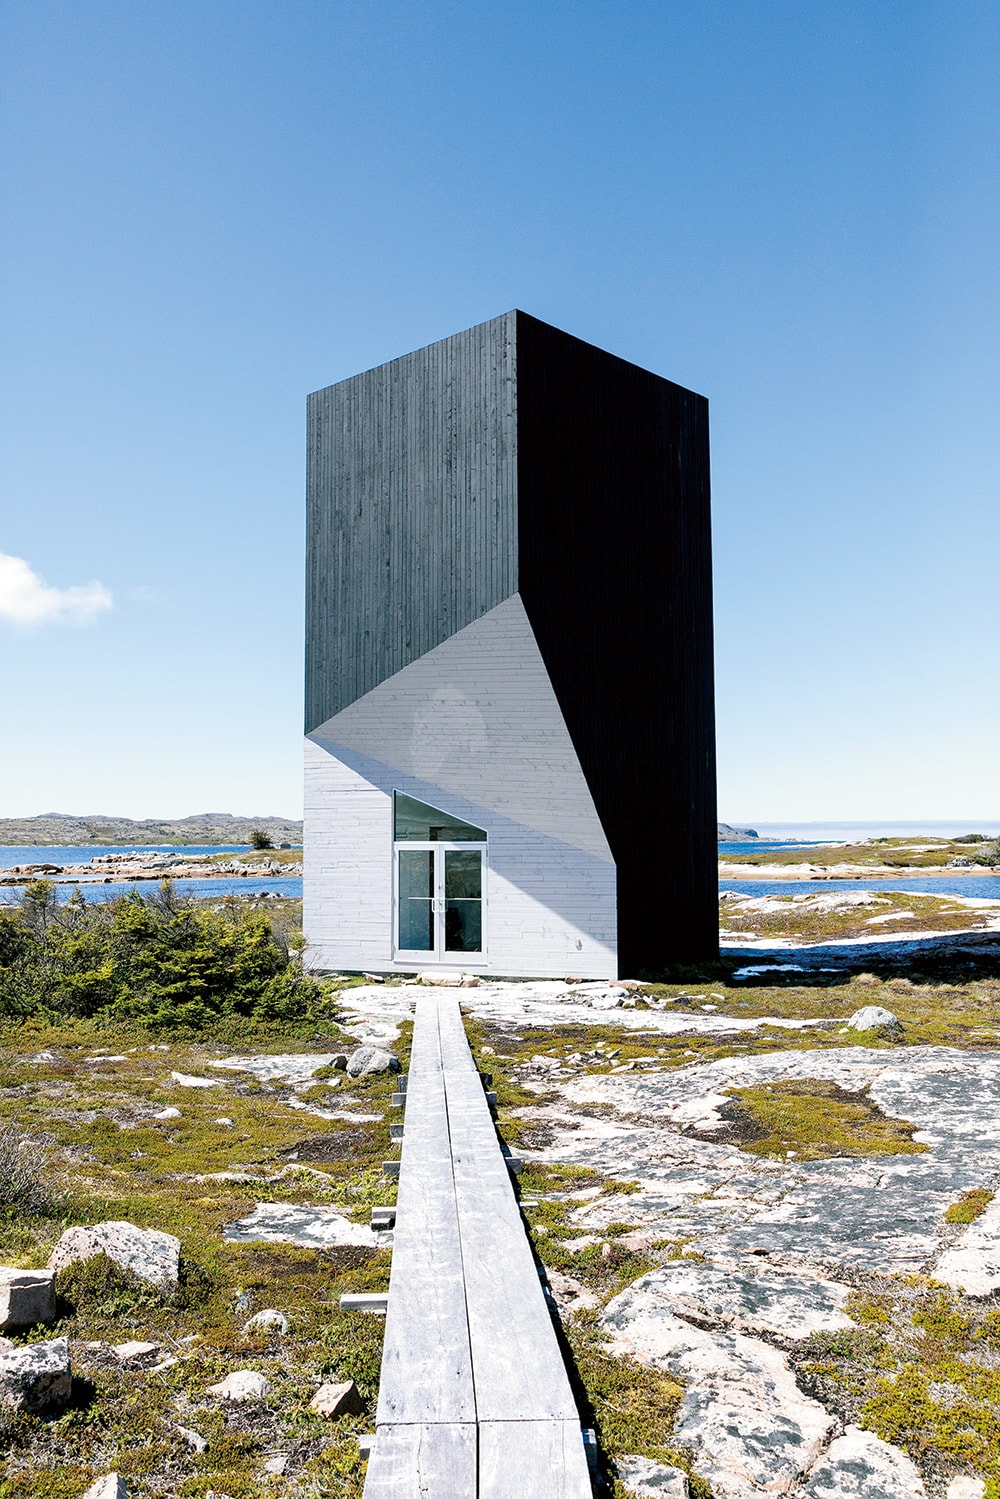 ショウル湾に面したタワー・スタジオ。スタジオの地図はウェブサイトで確認。http://www.yatzer.com/Fogo-Island-Studios-Saunders-Architecture-Newfoundland-Canada/